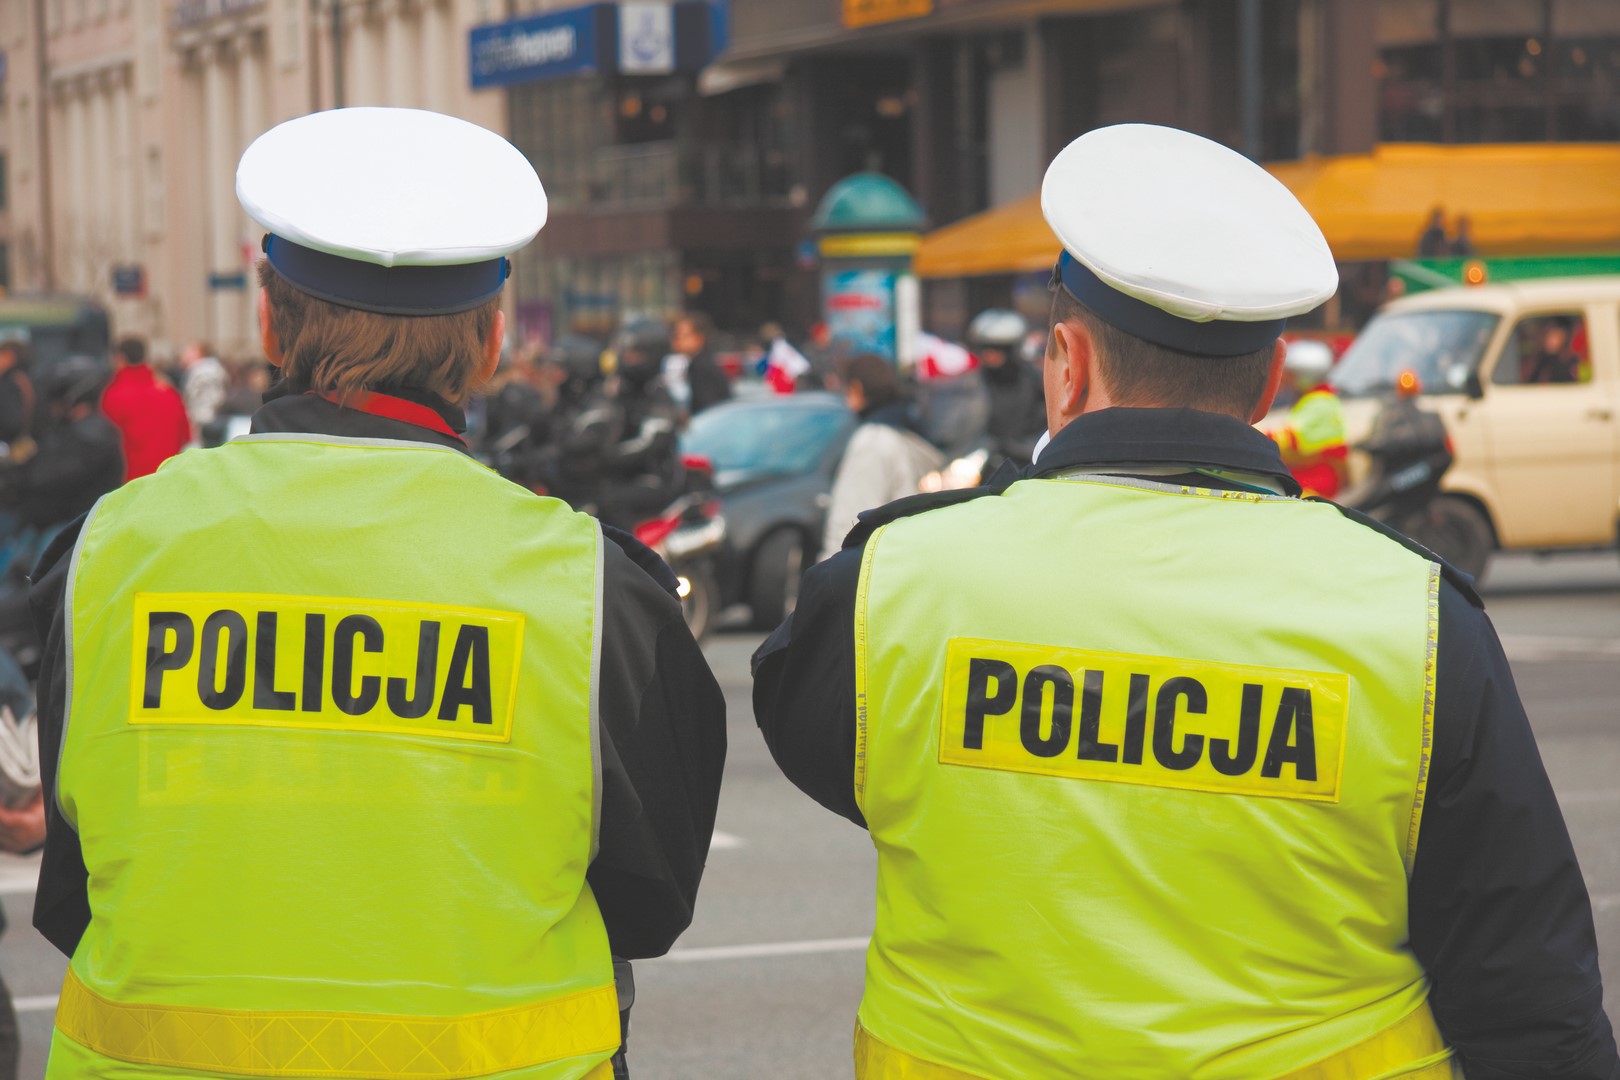 Komenda Powiatowa Policji w Ełku poszukuje osób, które chcą zostać policjantem